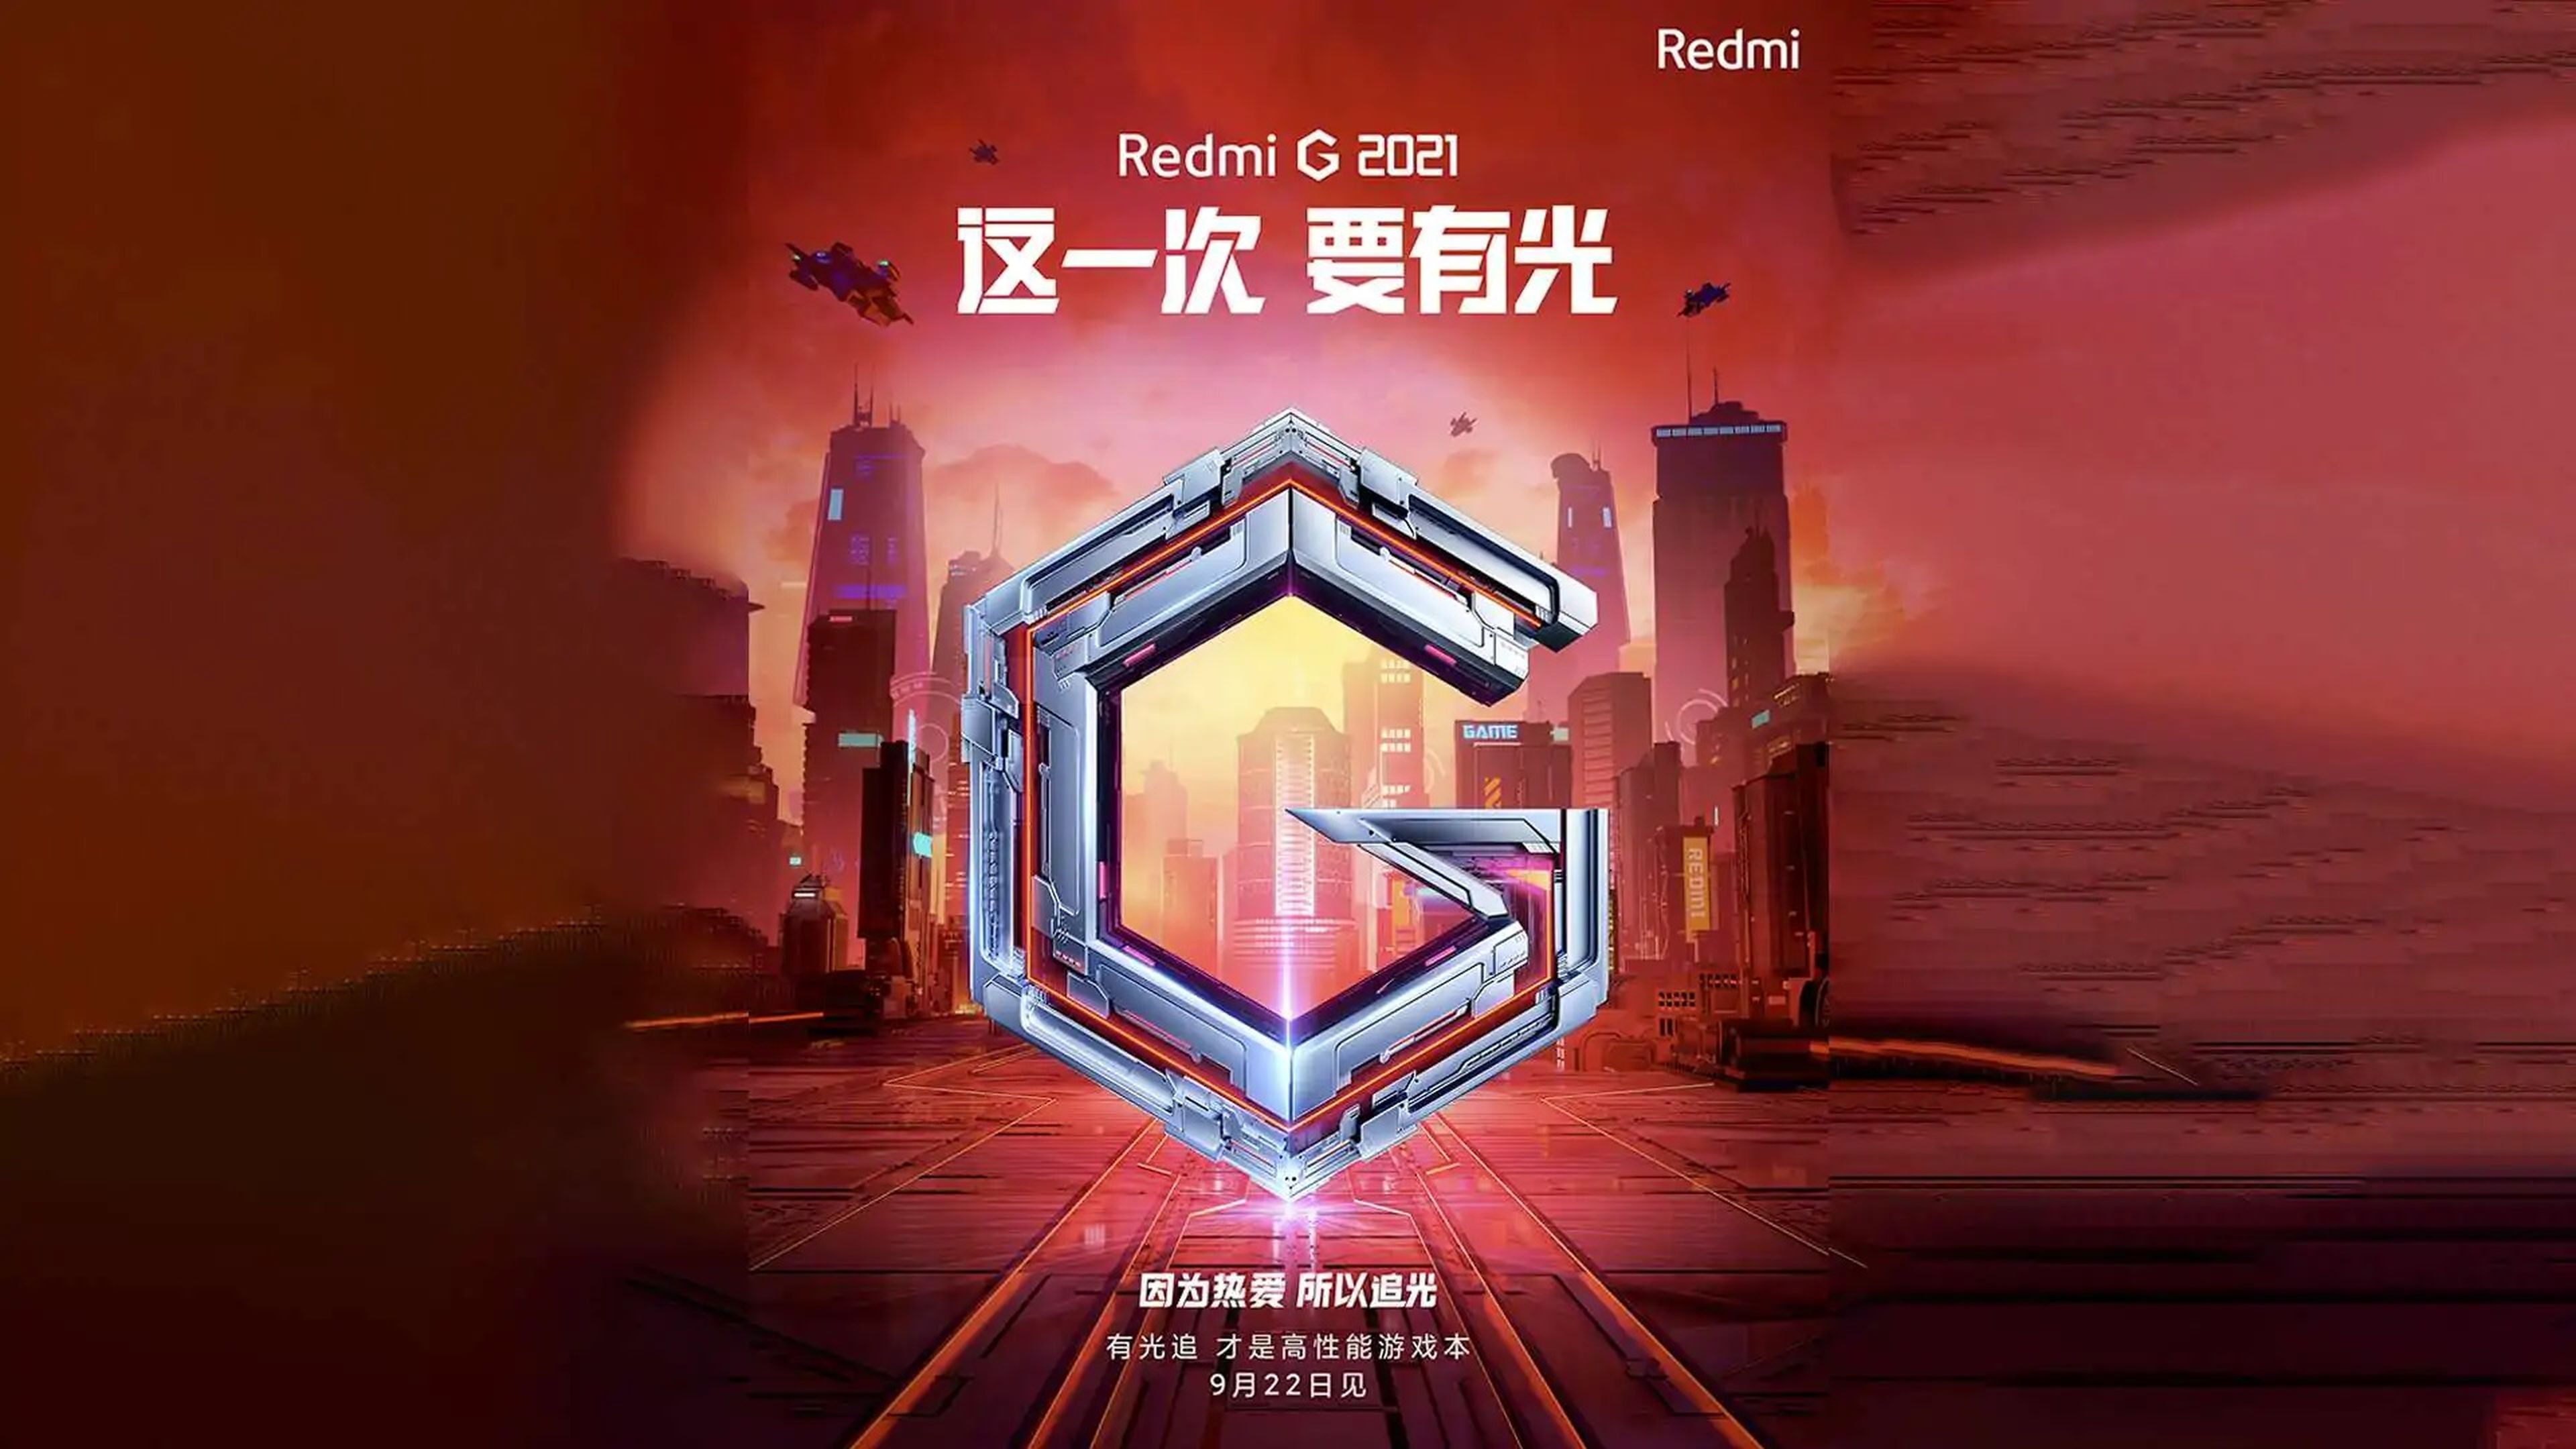 Imagen oficial del anuncio de los Redmi G 2021